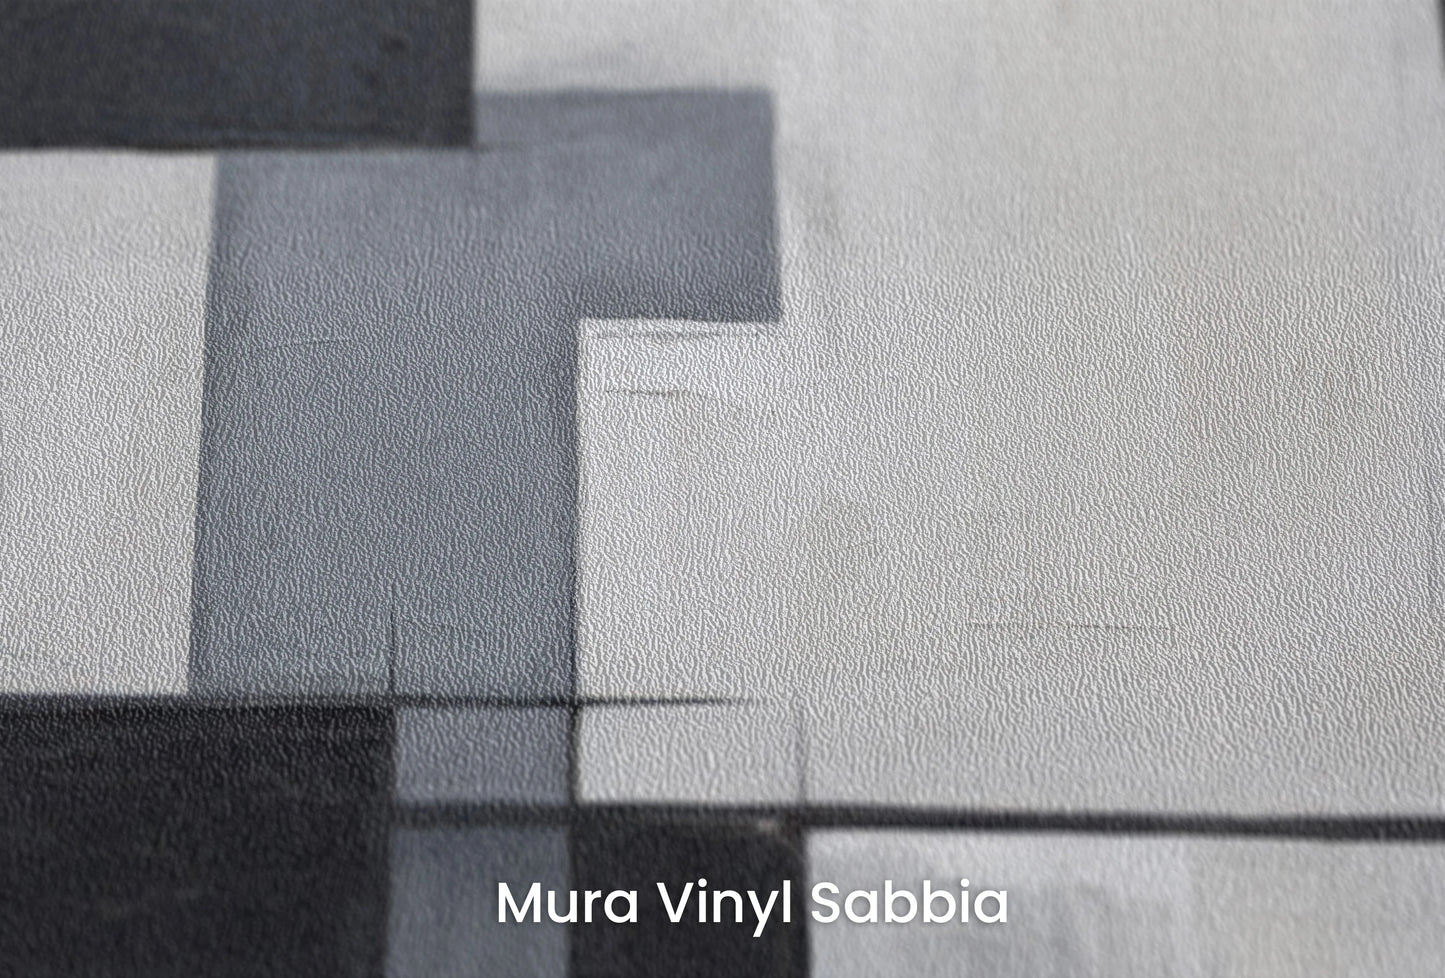 Zbliżenie na artystyczną fototapetę o nazwie Monochromatic Mosaic na podłożu Mura Vinyl Sabbia struktura grubego ziarna piasku.